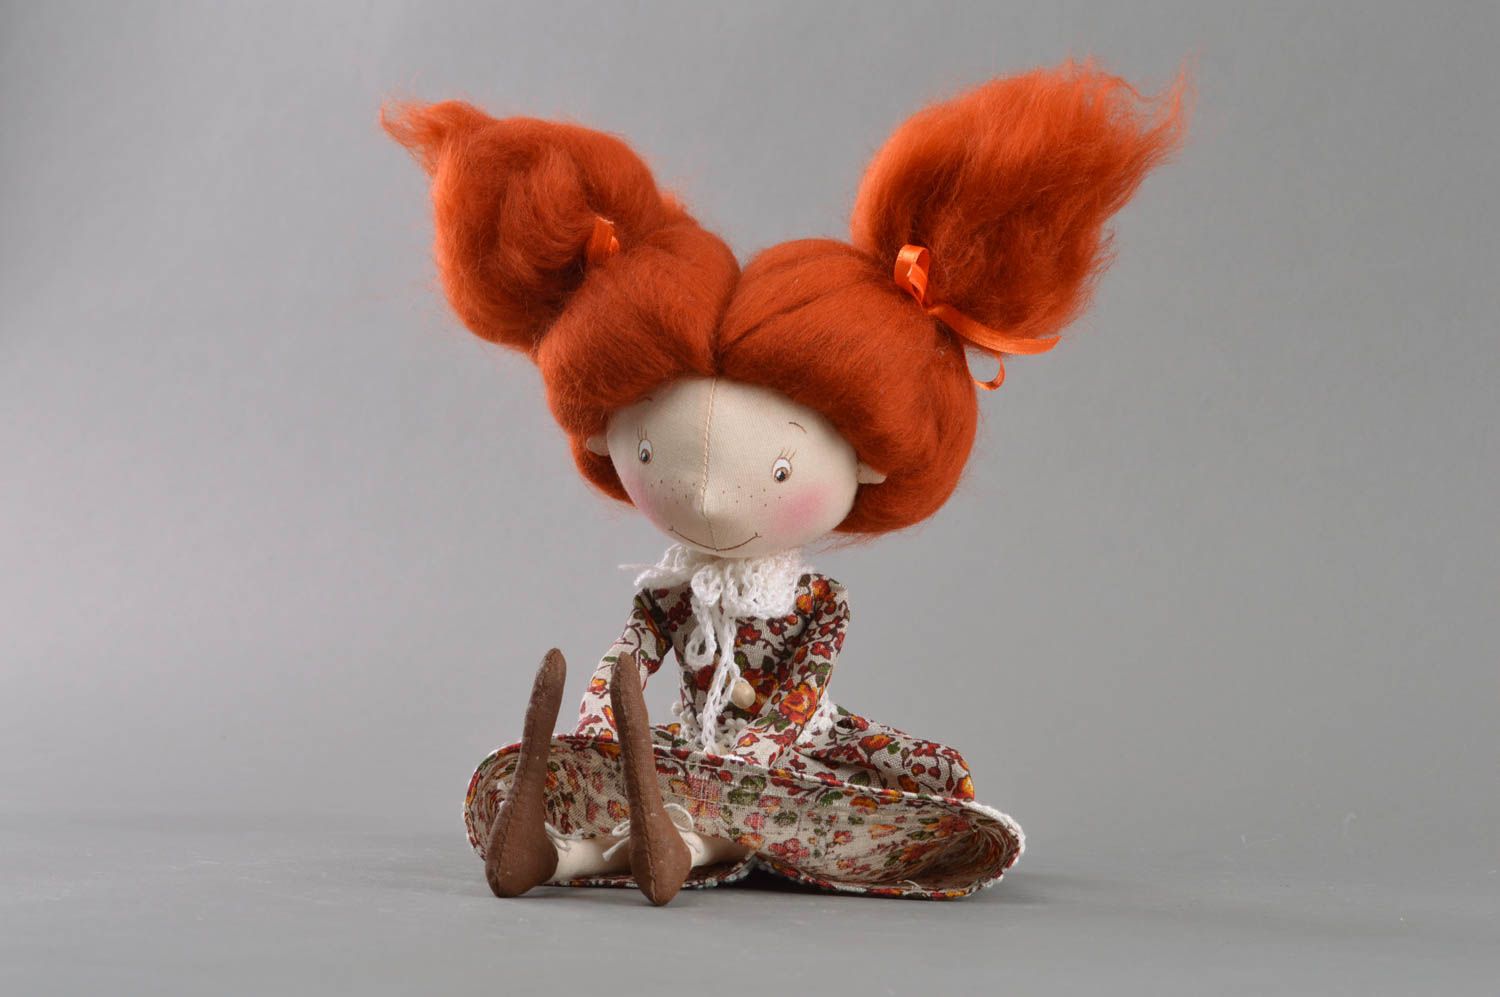 Авторская интерьерная кукла ручной работы из ткани на подставке Рыженькая   фото 3